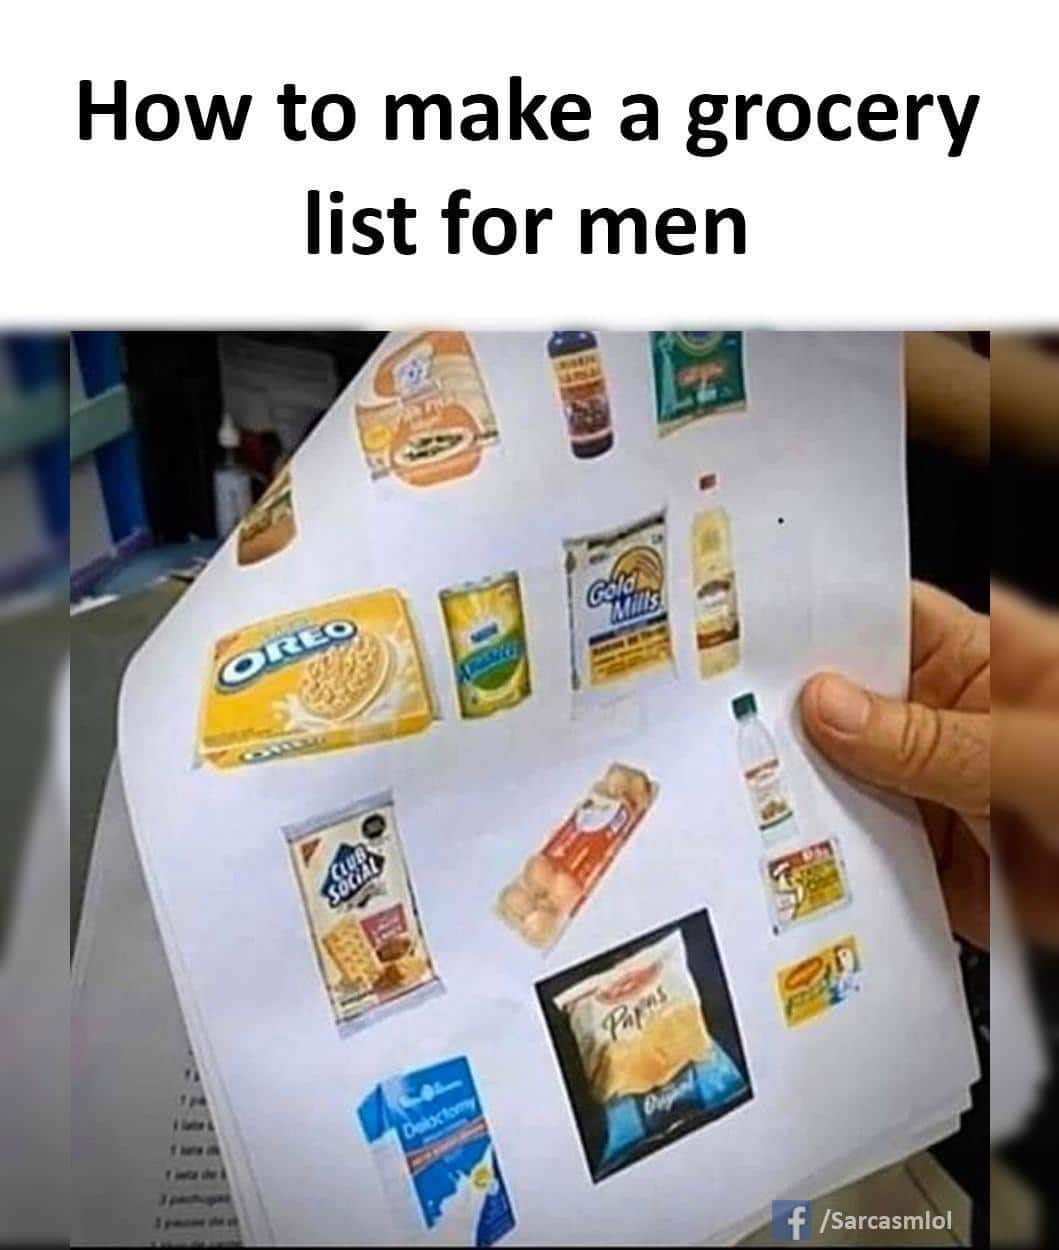 Cringe, En CanT cringe memes Cringe, En CanT text: How to make a grocery list for men --7 f /Sarcasmlol 